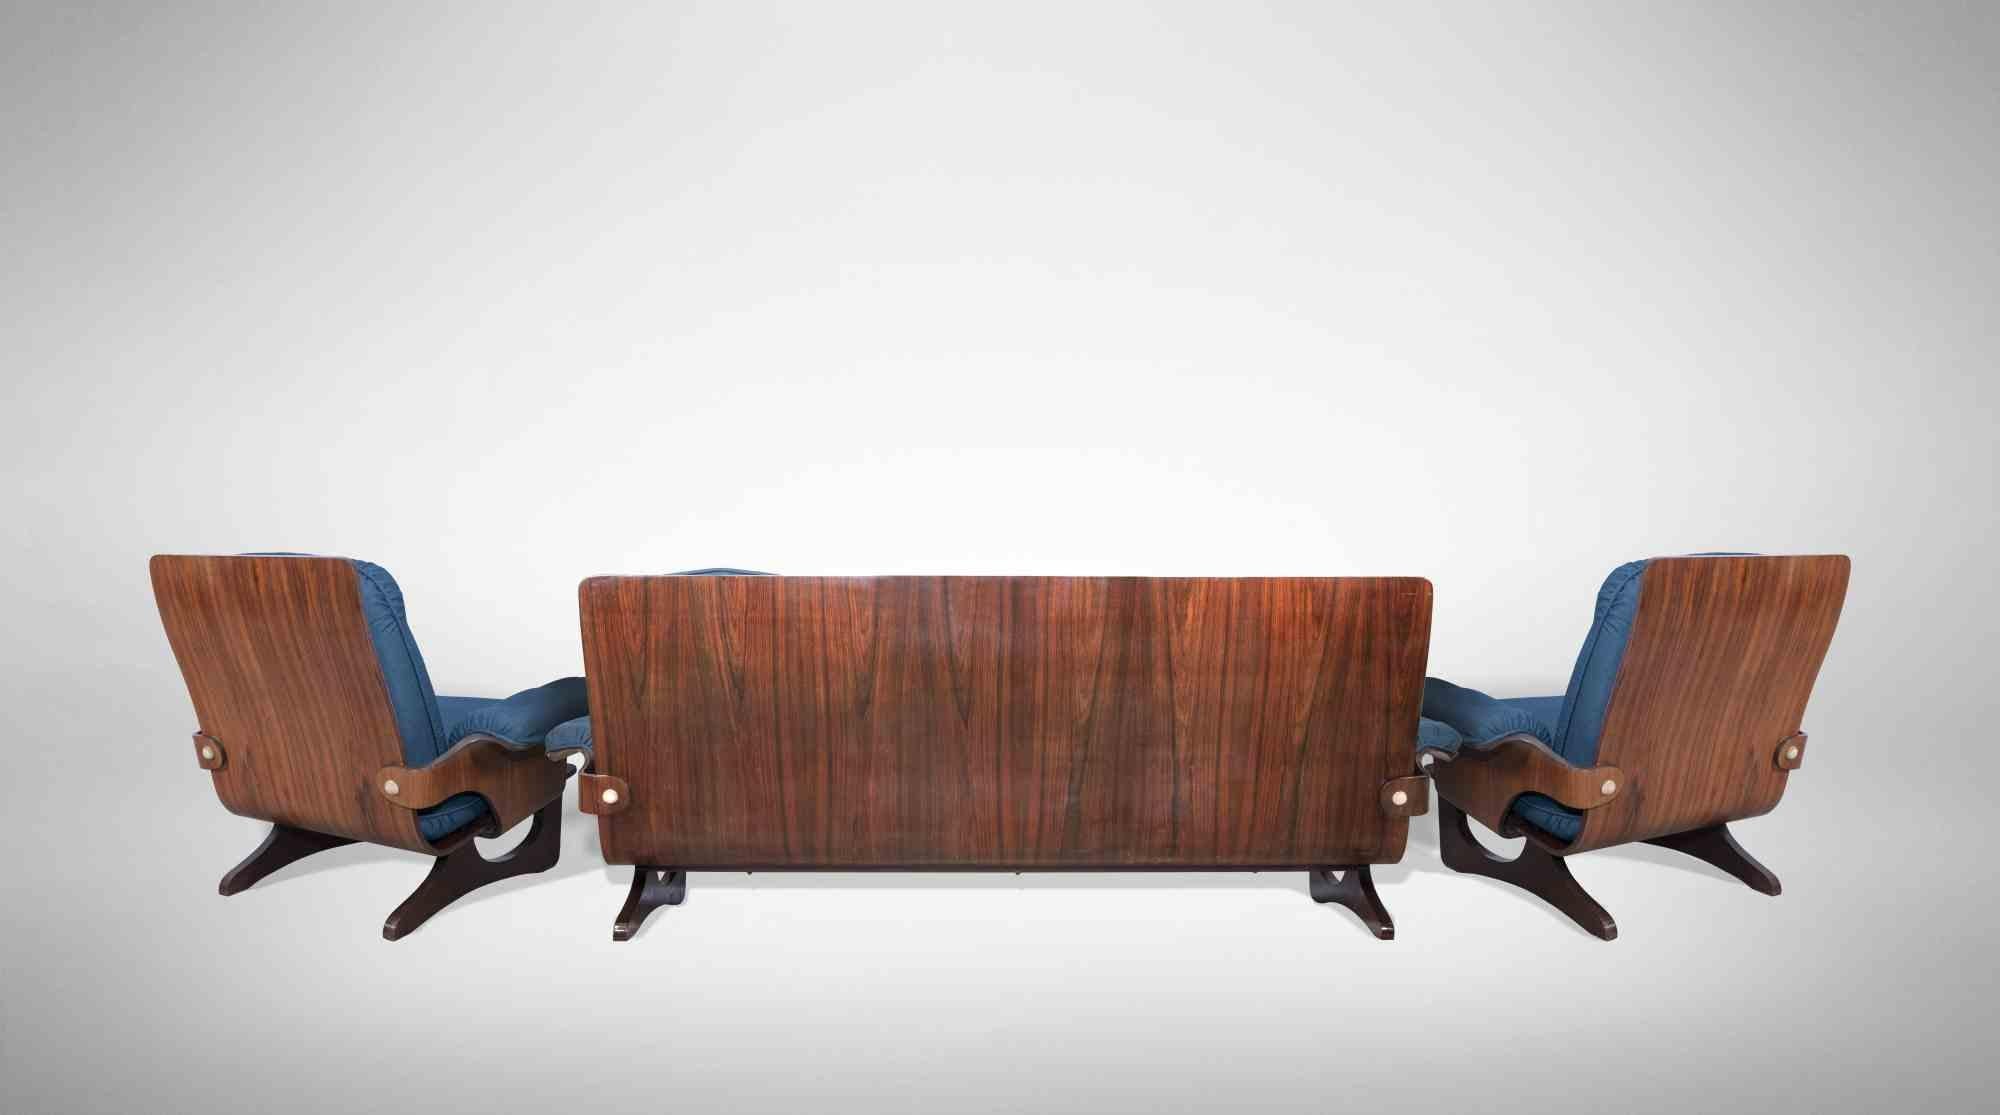 Ensemble de canapés vintage réalisé par Silvio Cavatorta au milieu du 20e siècle.

Rare et impressionnant ensemble impressionnant de canapés et de fauteuils réalisés en contreplaqué courbé plaqué en bois de rose et en tissu.

Dimensions du